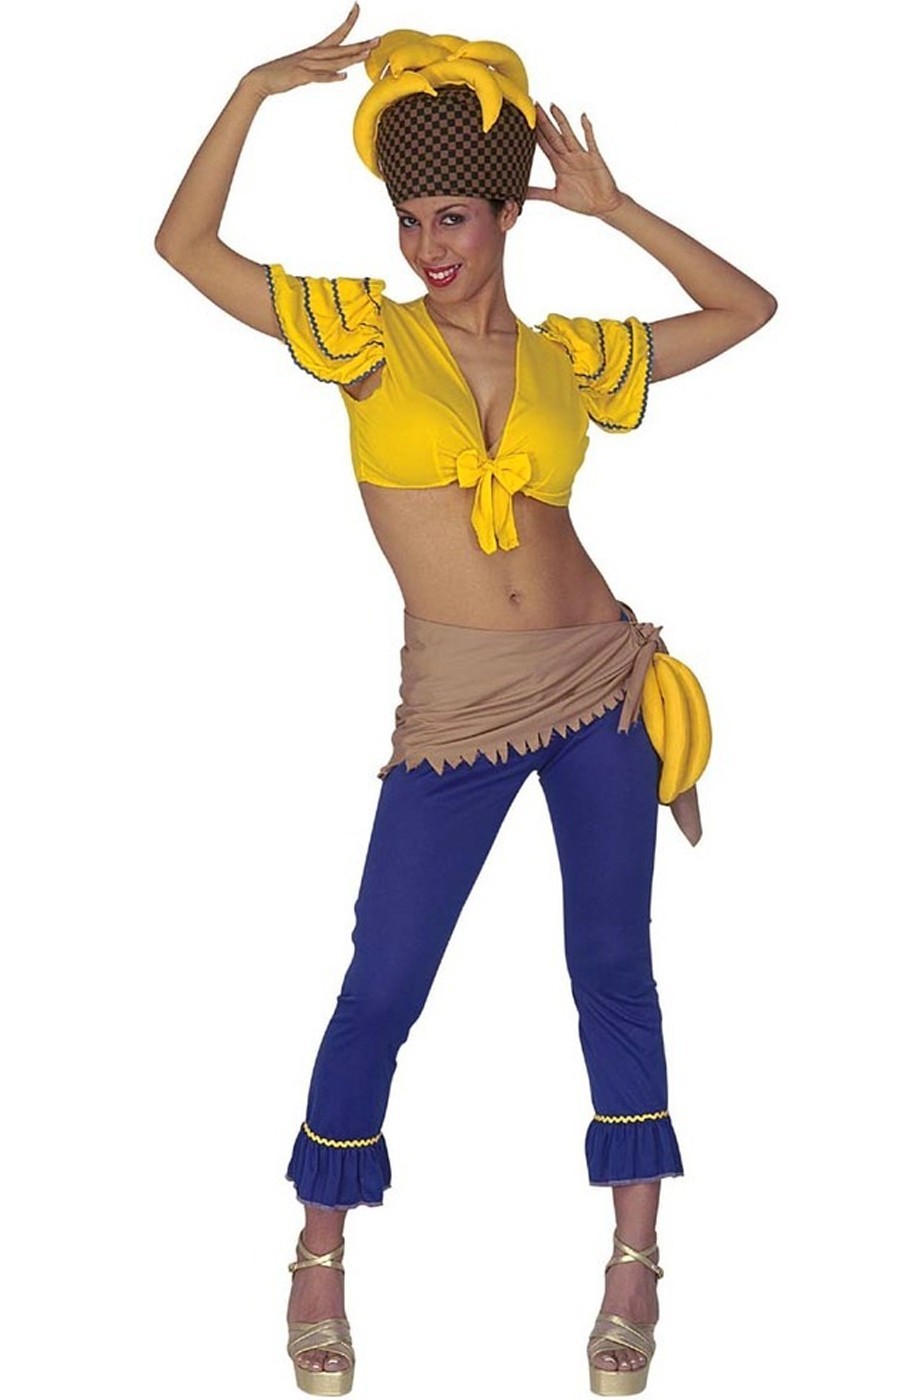 Costume da Brasiliana Banana Girl Tropicale